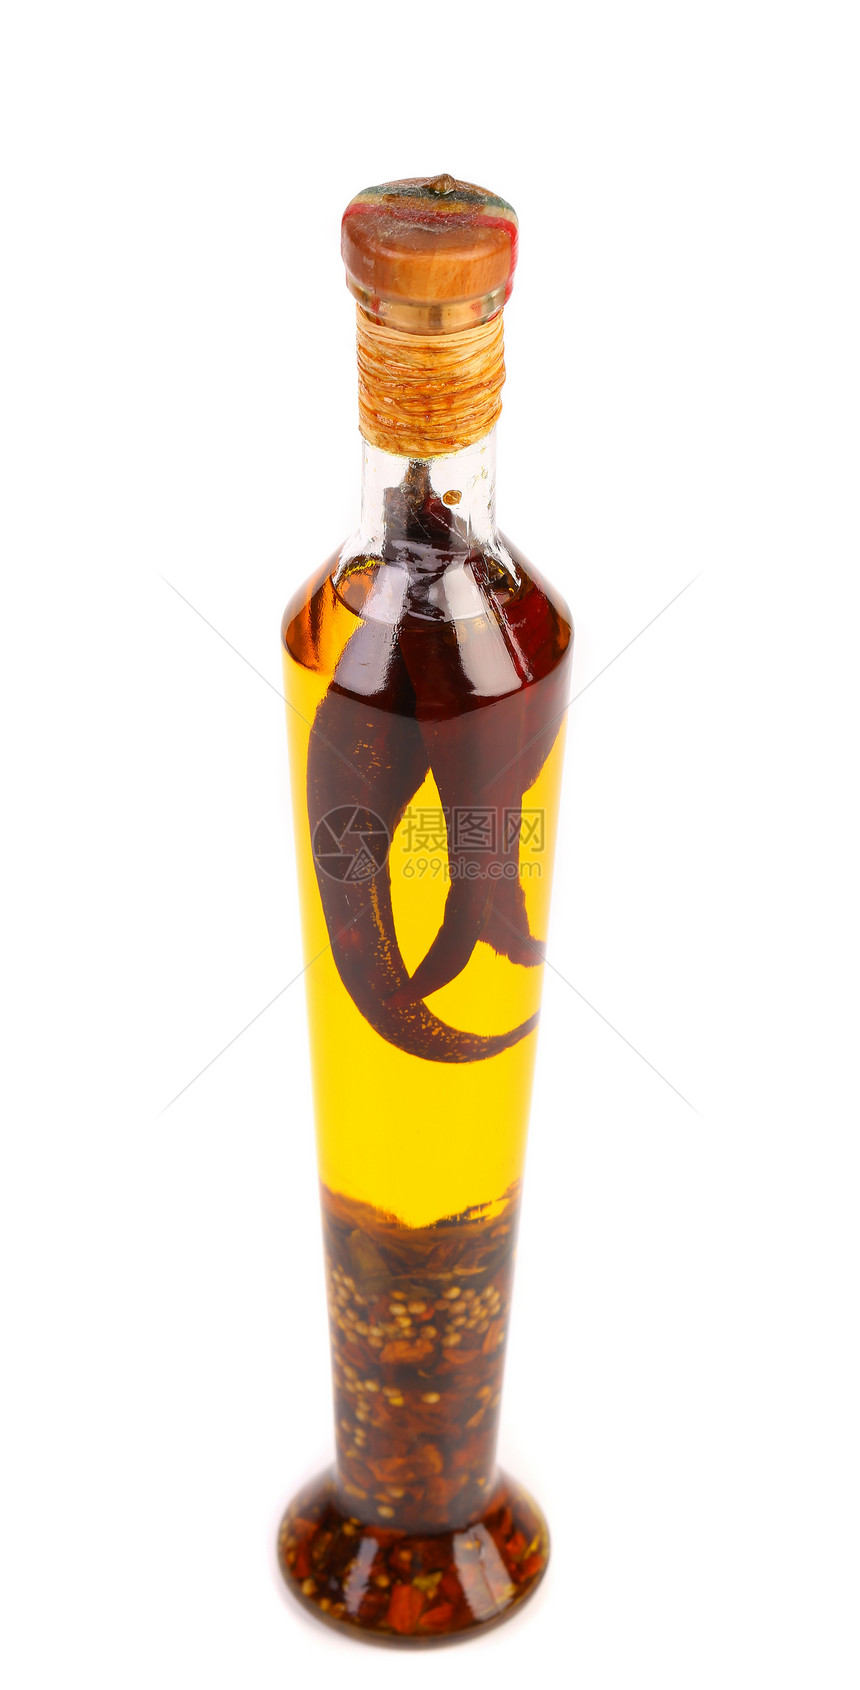 油和香料加到瓶子里橙子味道草本植物玻璃种子树叶低脂肪胡椒软木美食图片